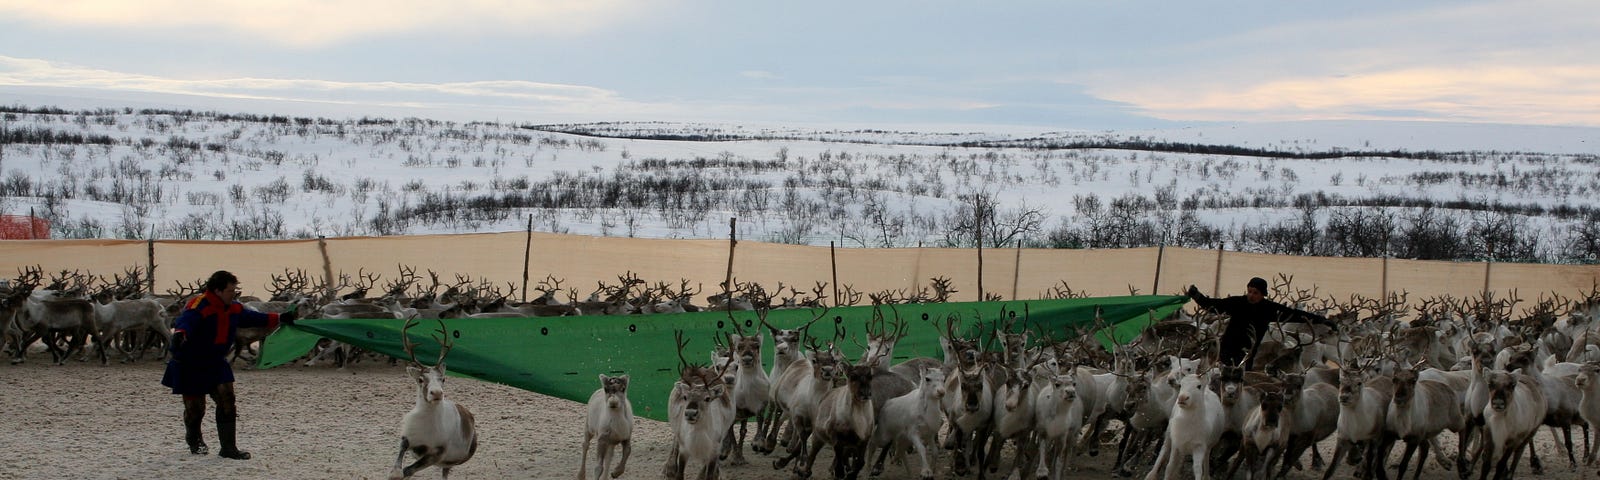 Reindeer being herded by two Saami people.